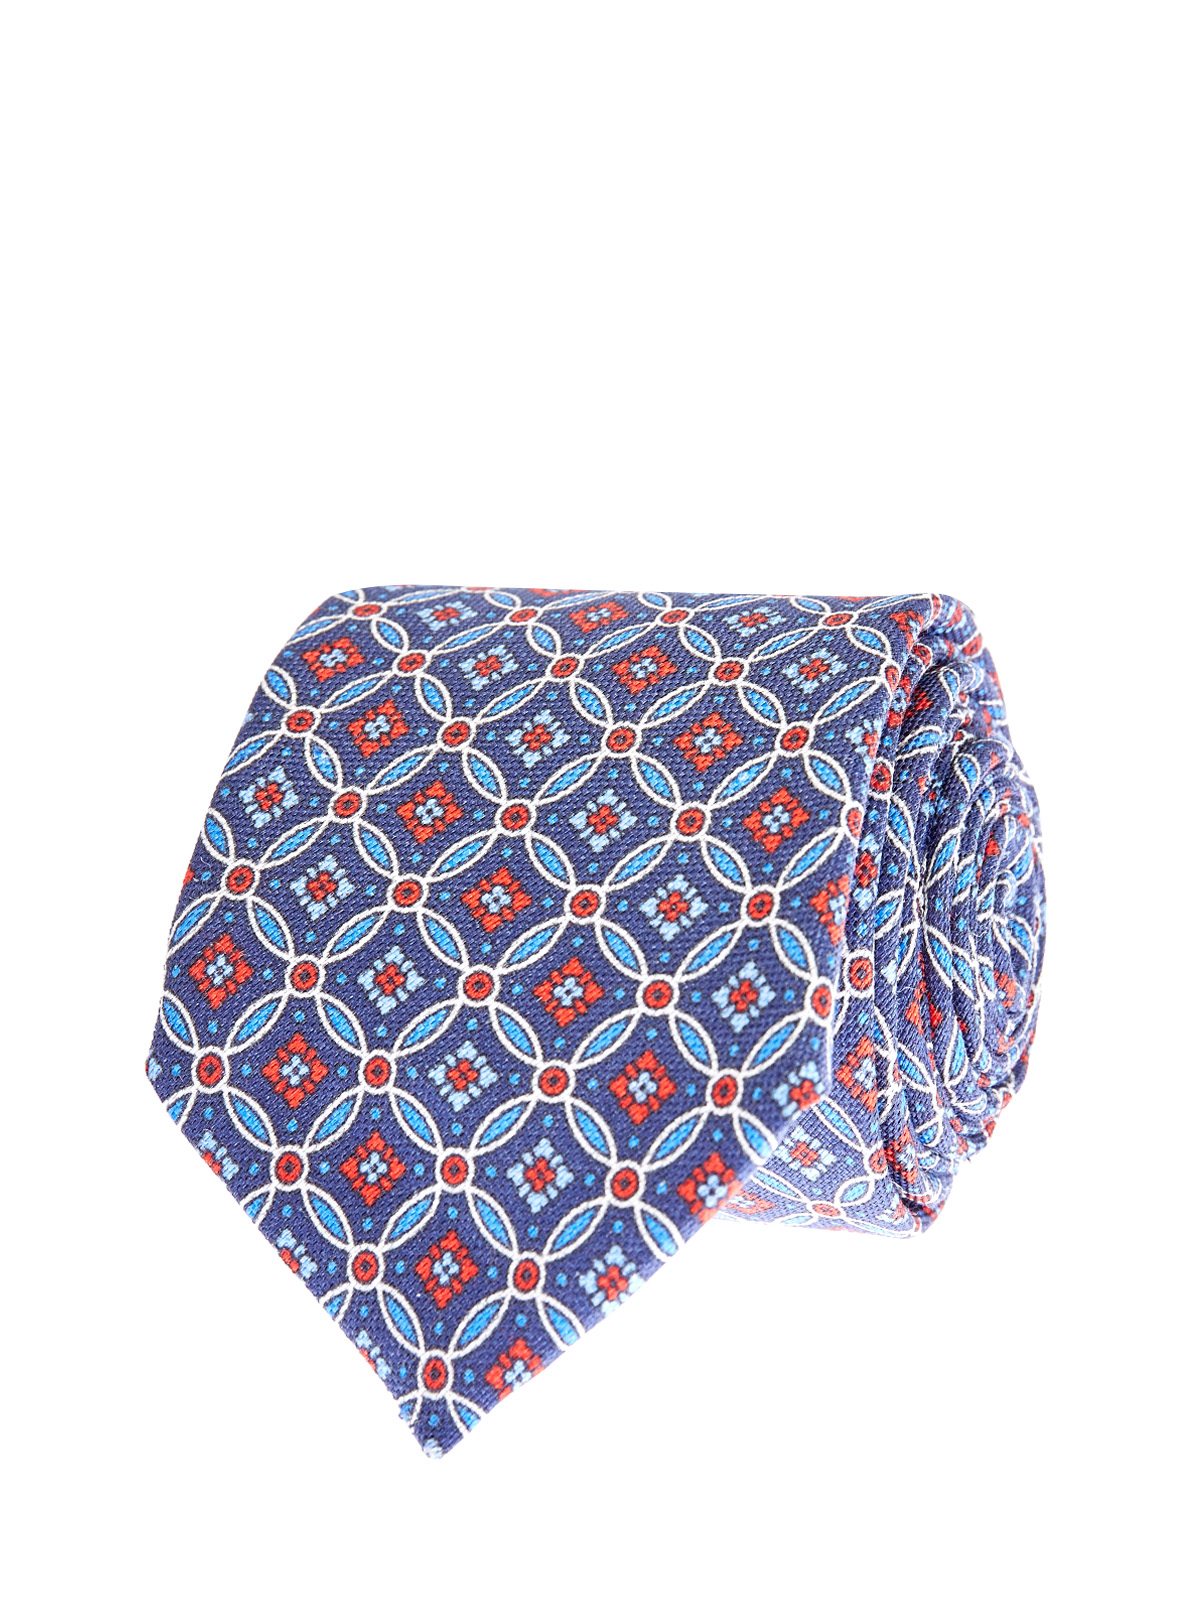 Шелковый галстук ручной работы из фактурного жаккарда CANALI, цвет синий, размер M